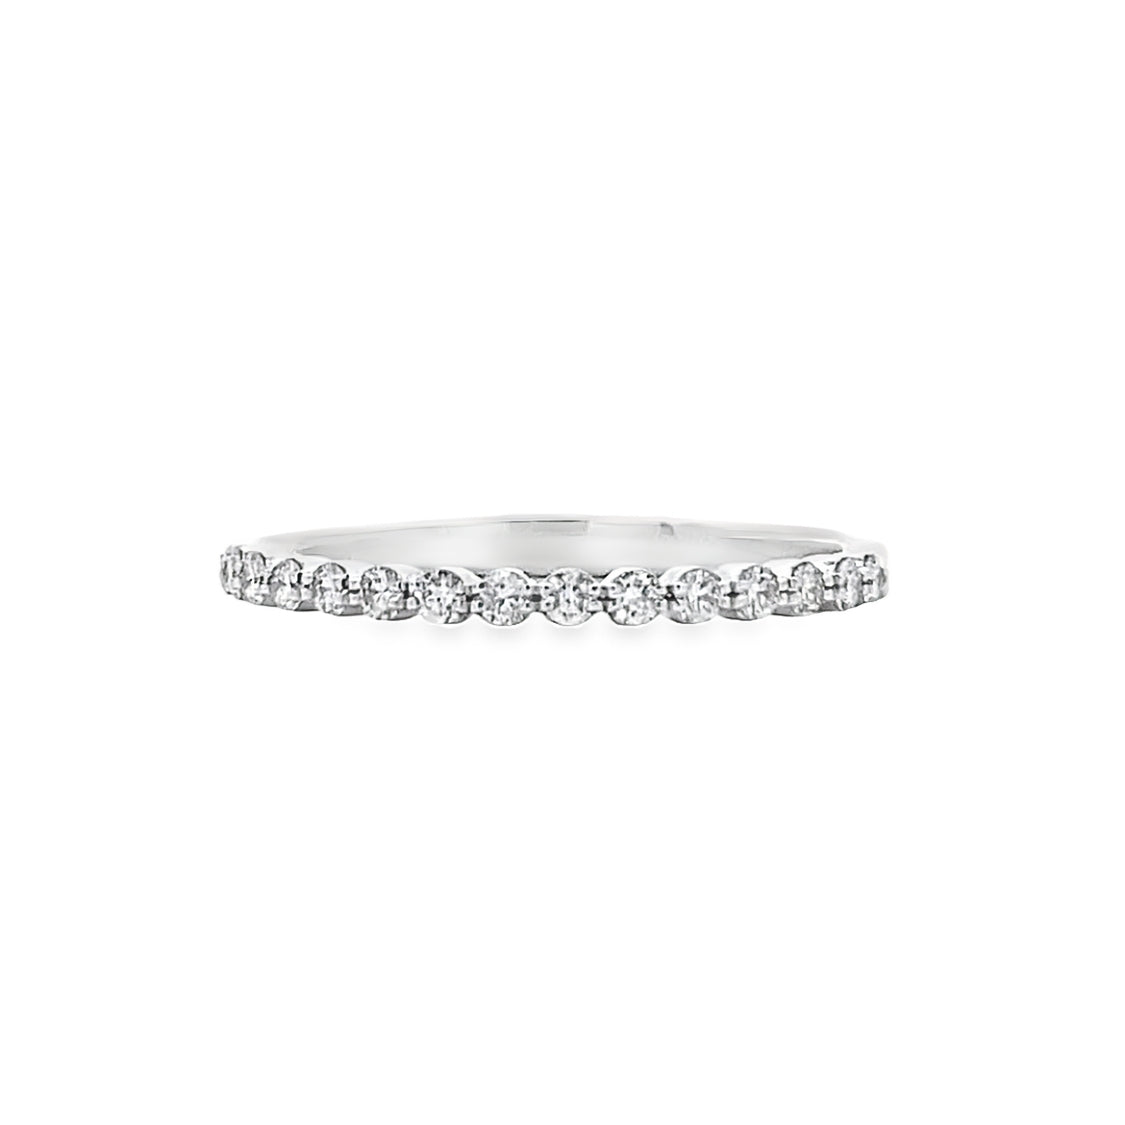 Simon G Jewelry 18 Karat White Gold Round Diamond Wedding Band - Lady's LR2569